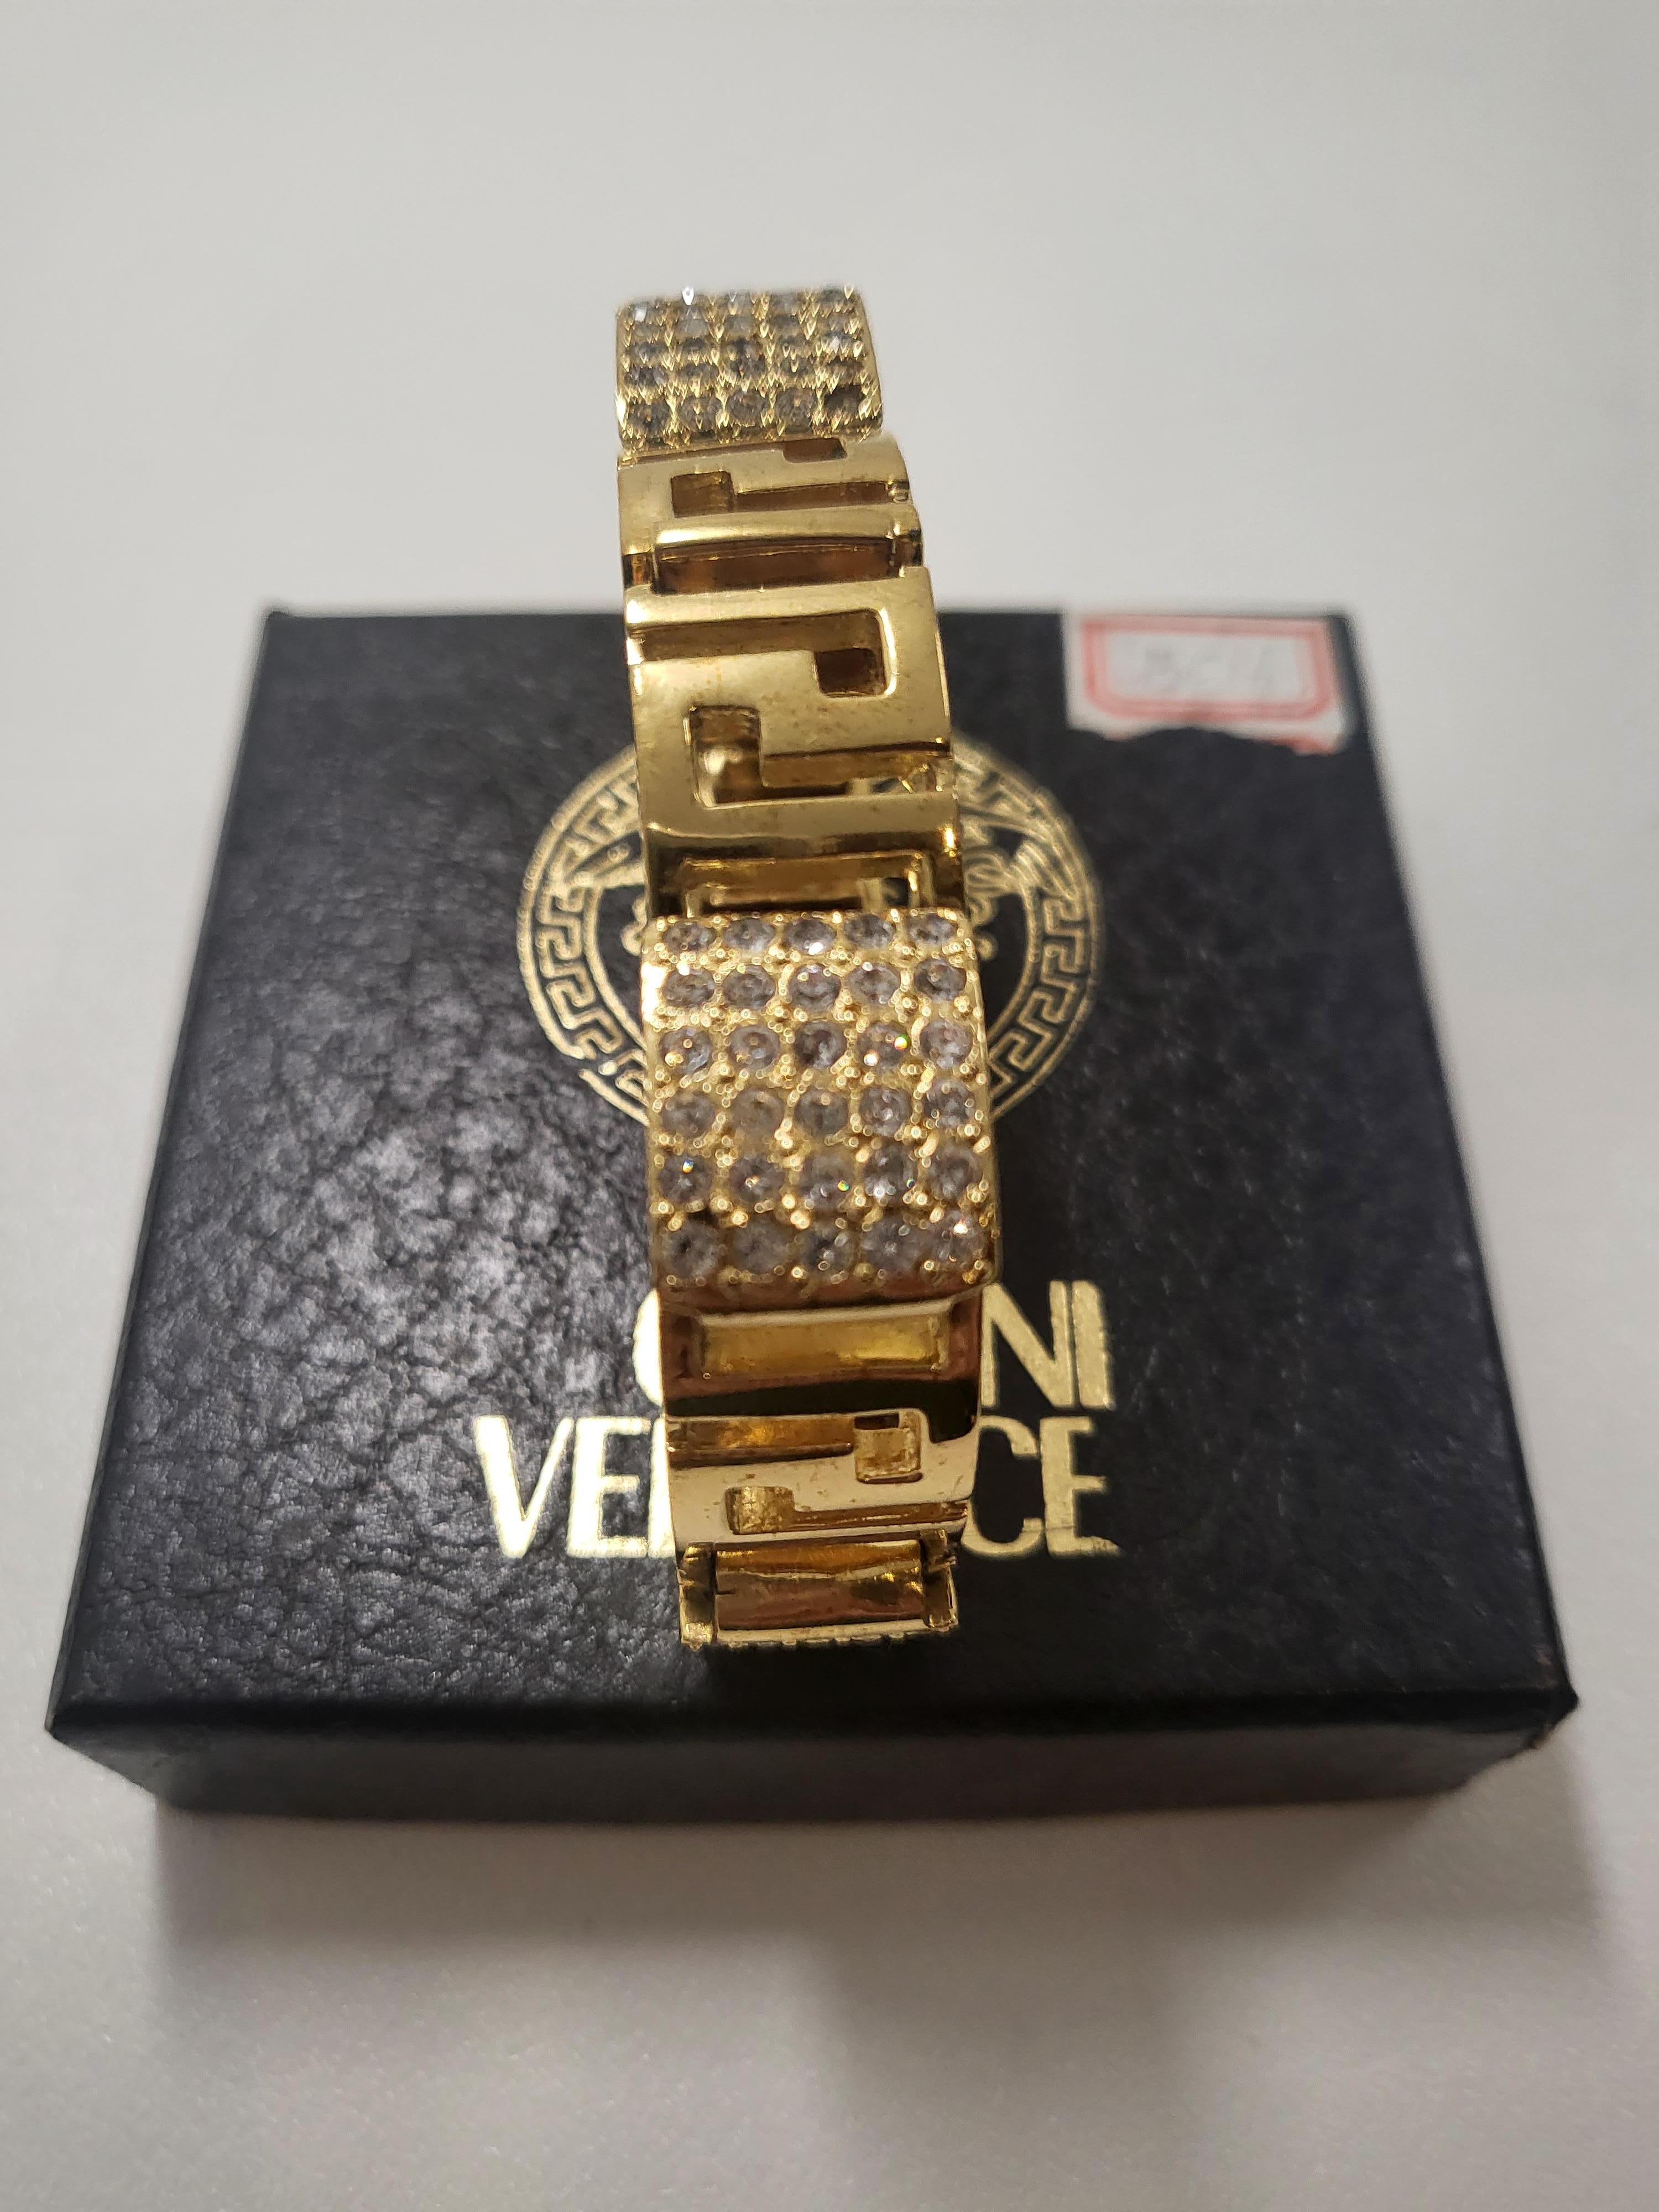 Tauchen Sie ein in die Welt des Vintage-Glamours mit dem Gianni Versace Gold Rhinestones Greca Chunky Bracelet aus den 1990er Jahren, einem zeitlosen Meisterwerk, das die Opulenz und den ikonischen Stil dieser Ära verkörpert. Dieses mit viel Liebe